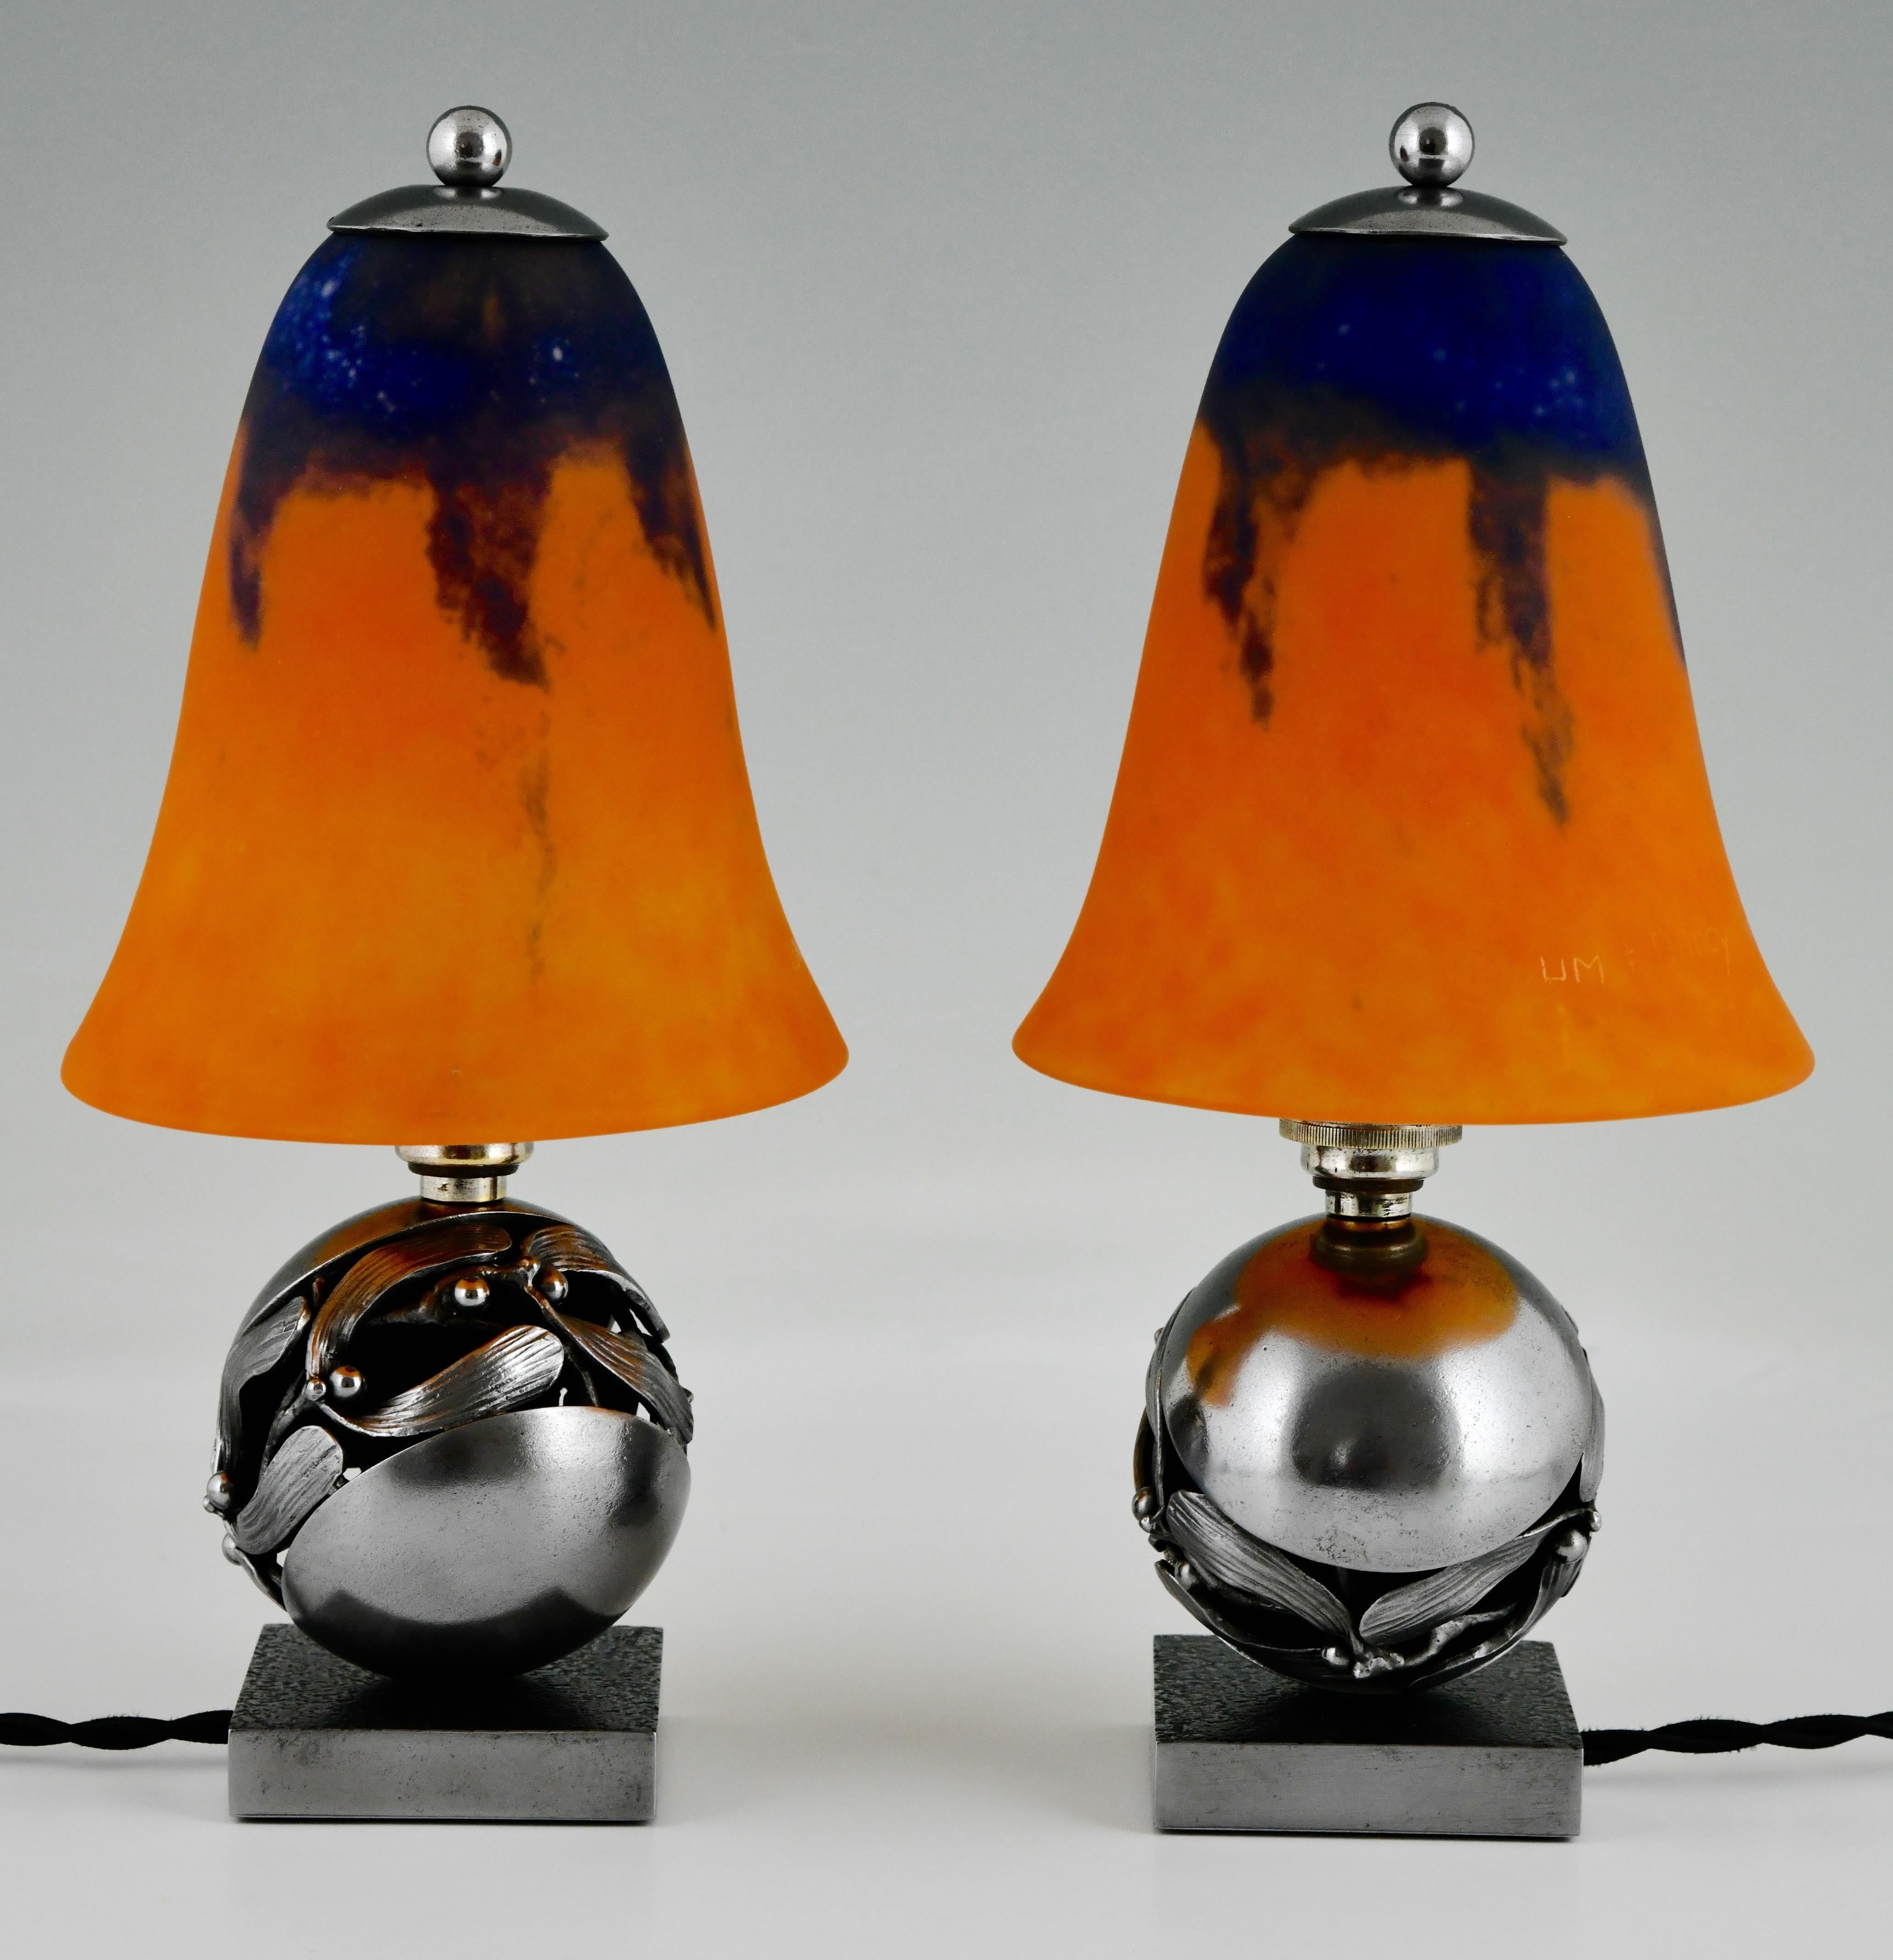 French Pair of Mistletoe Boule de Gui Art Deco table lamps Edgar Brandt and Daum 1925 For Sale